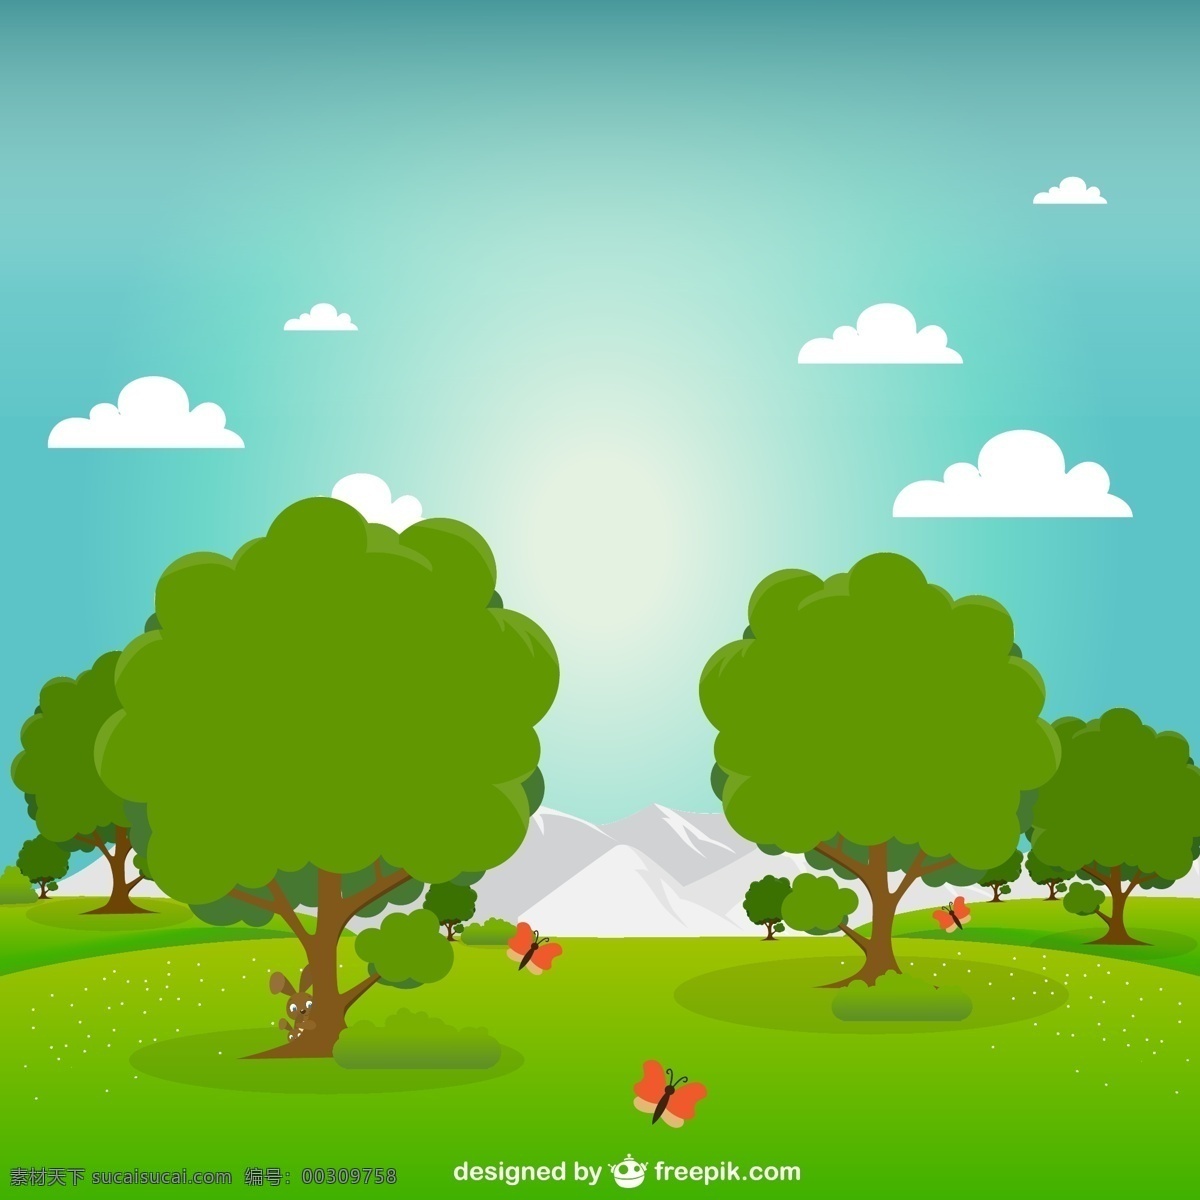 日出 时 绿色 公园 树 夏 绿化 园林 平面 空间 平面设计 假日 树木 游戏 元素 娱乐 度假 城市 插图 设计元素 图形 青色 天蓝色